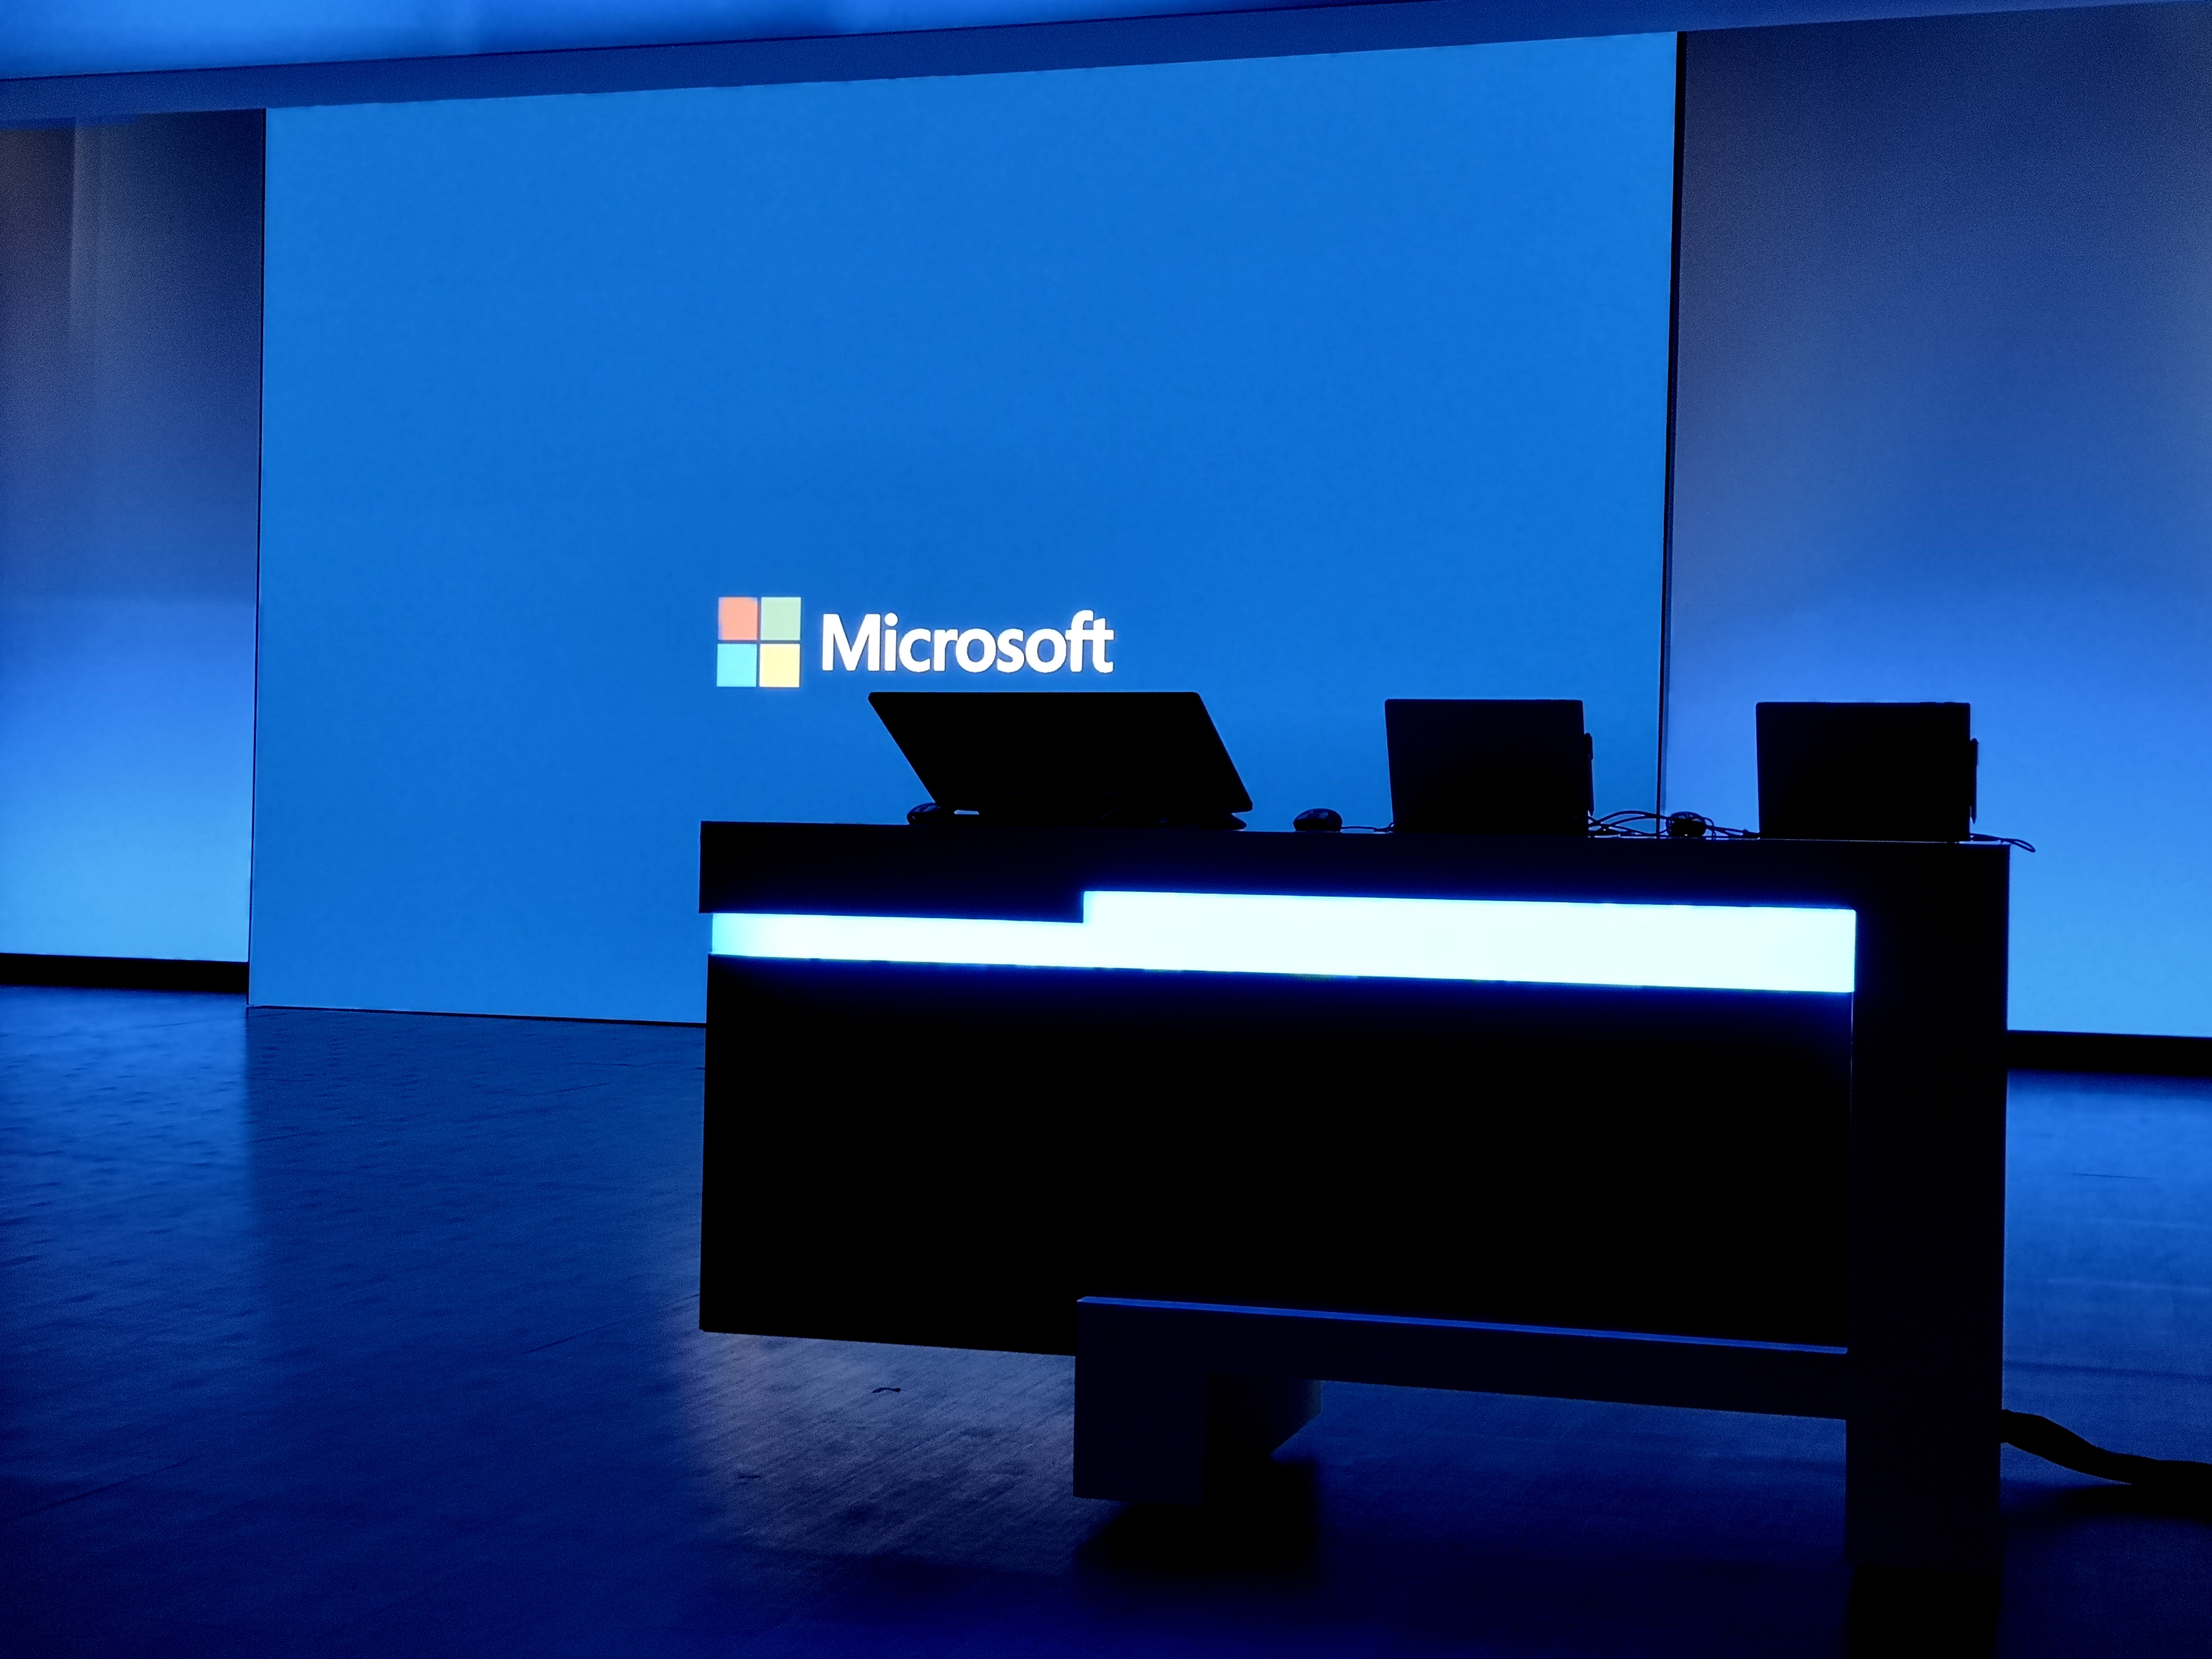 Last ned: Microsoft har nettopp oppdatert nye Windows 10